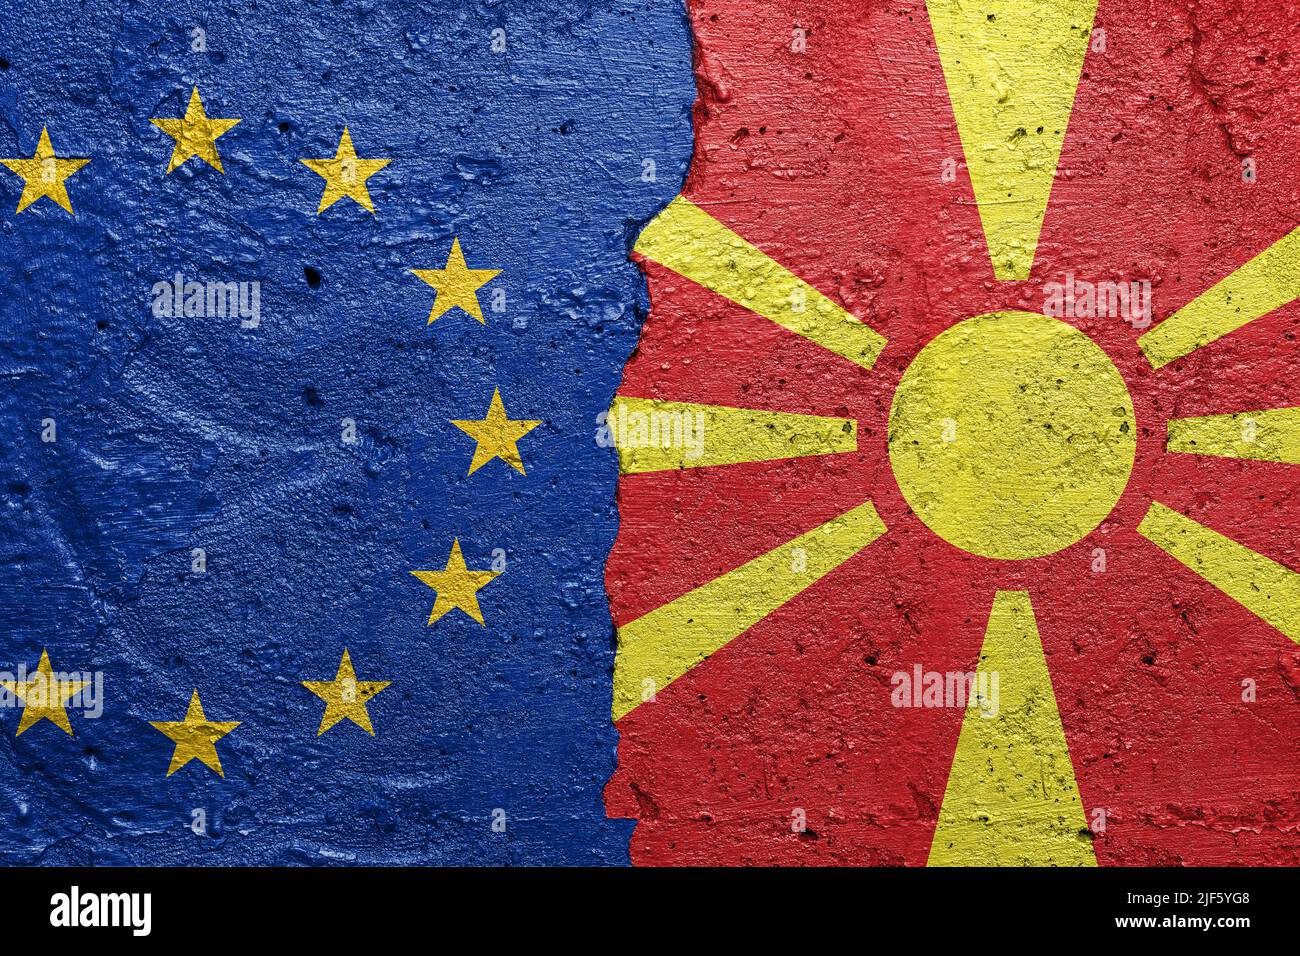 Drapeaux de l'Union européenne et de Nort Macédoine - mur en béton fissuré peint avec un drapeau de l'UE à gauche et un drapeau à droite Banque D'Images